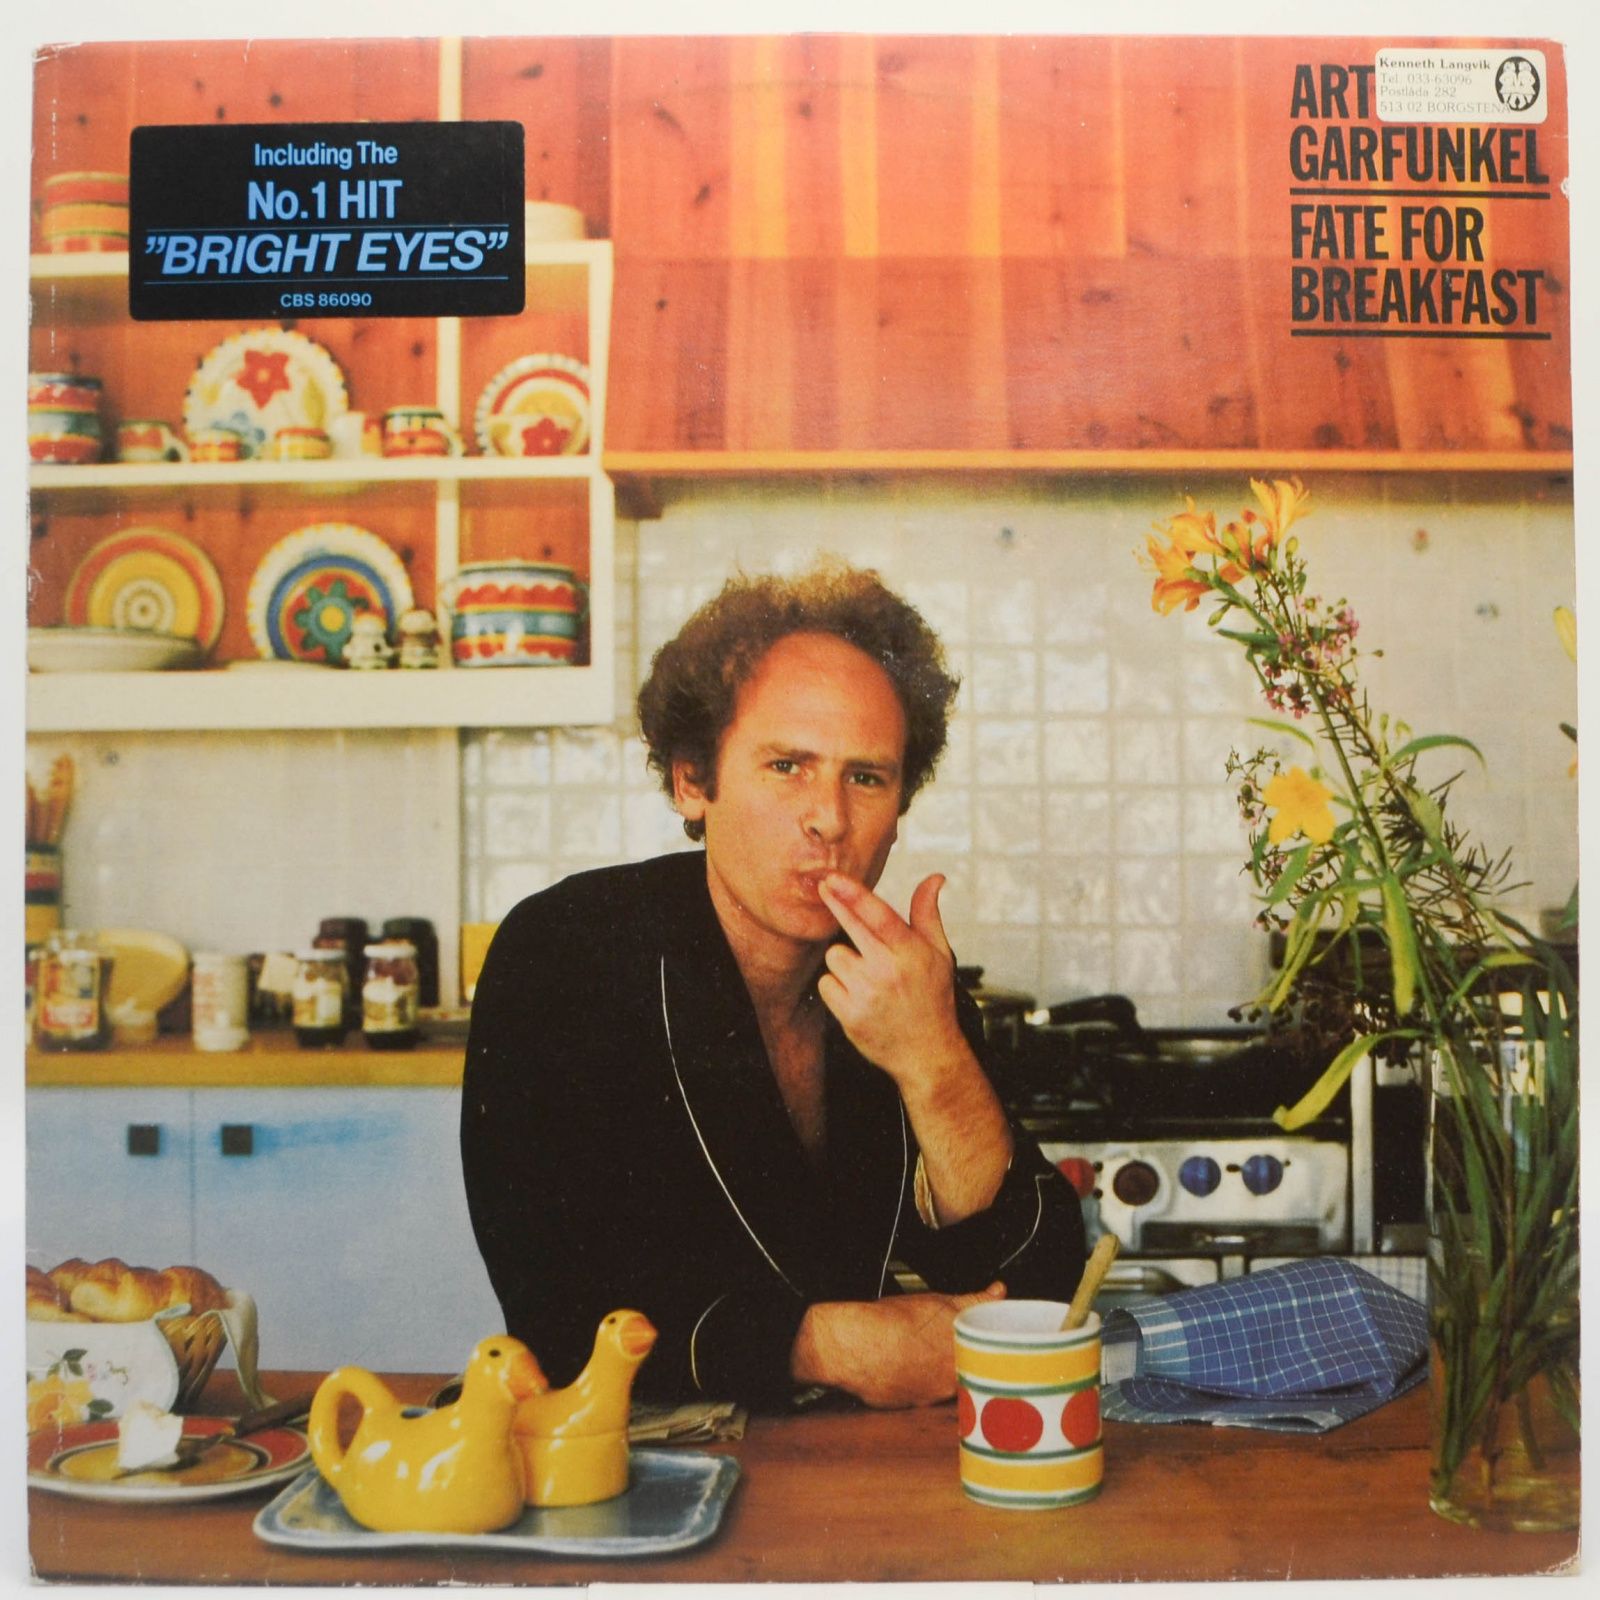 Art Garfunkel — Fate For Breakfast, 1979